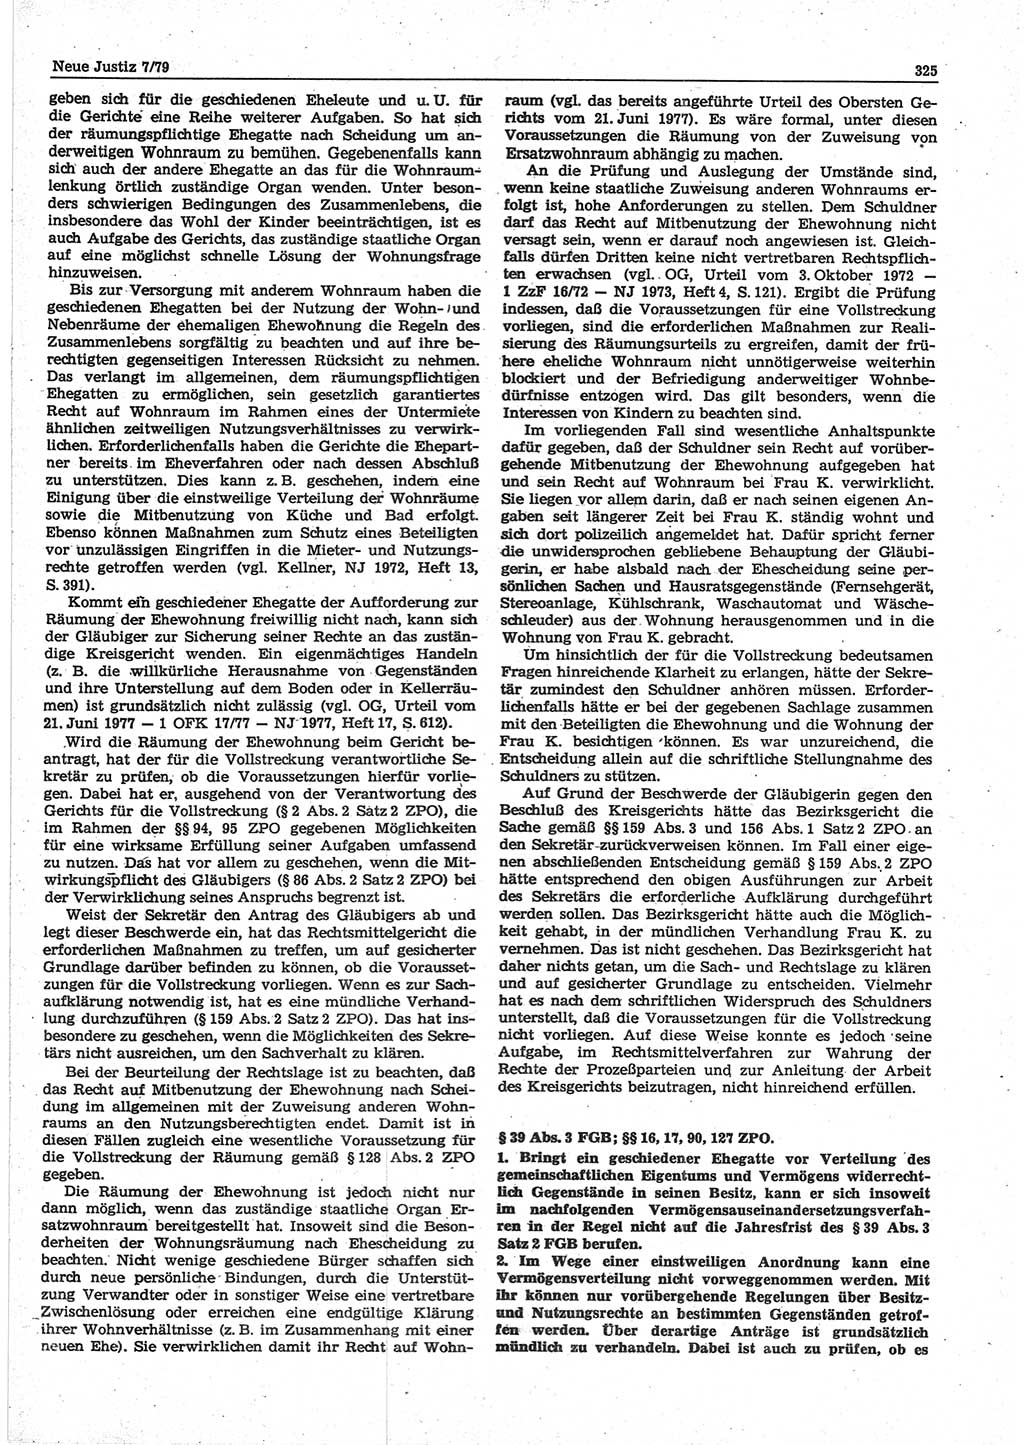 Neue Justiz (NJ), Zeitschrift für sozialistisches Recht und Gesetzlichkeit [Deutsche Demokratische Republik (DDR)], 33. Jahrgang 1979, Seite 325 (NJ DDR 1979, S. 325)